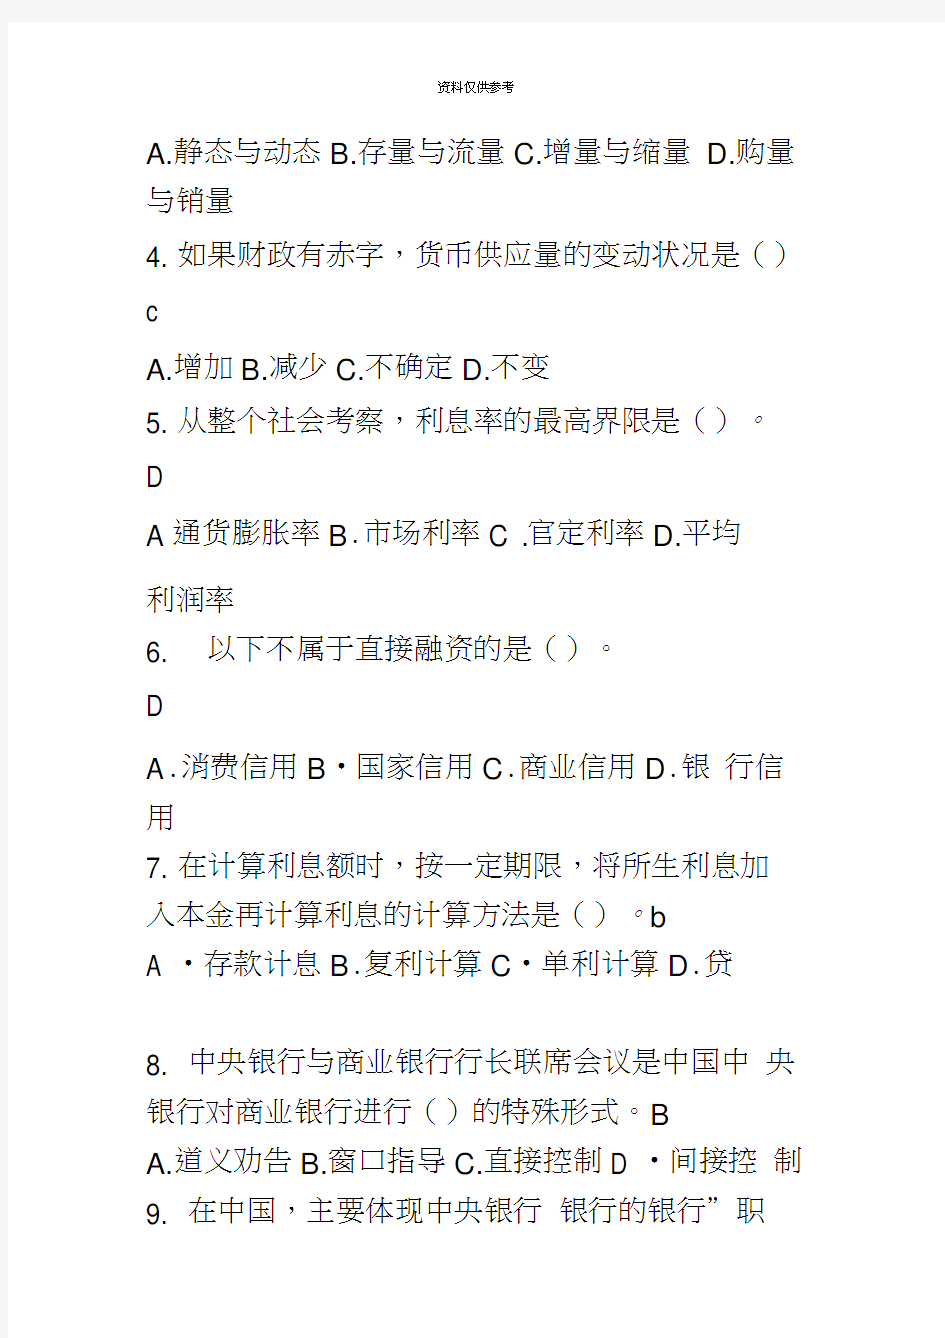 重庆农村商业银行考试试题笔试真题模拟最新